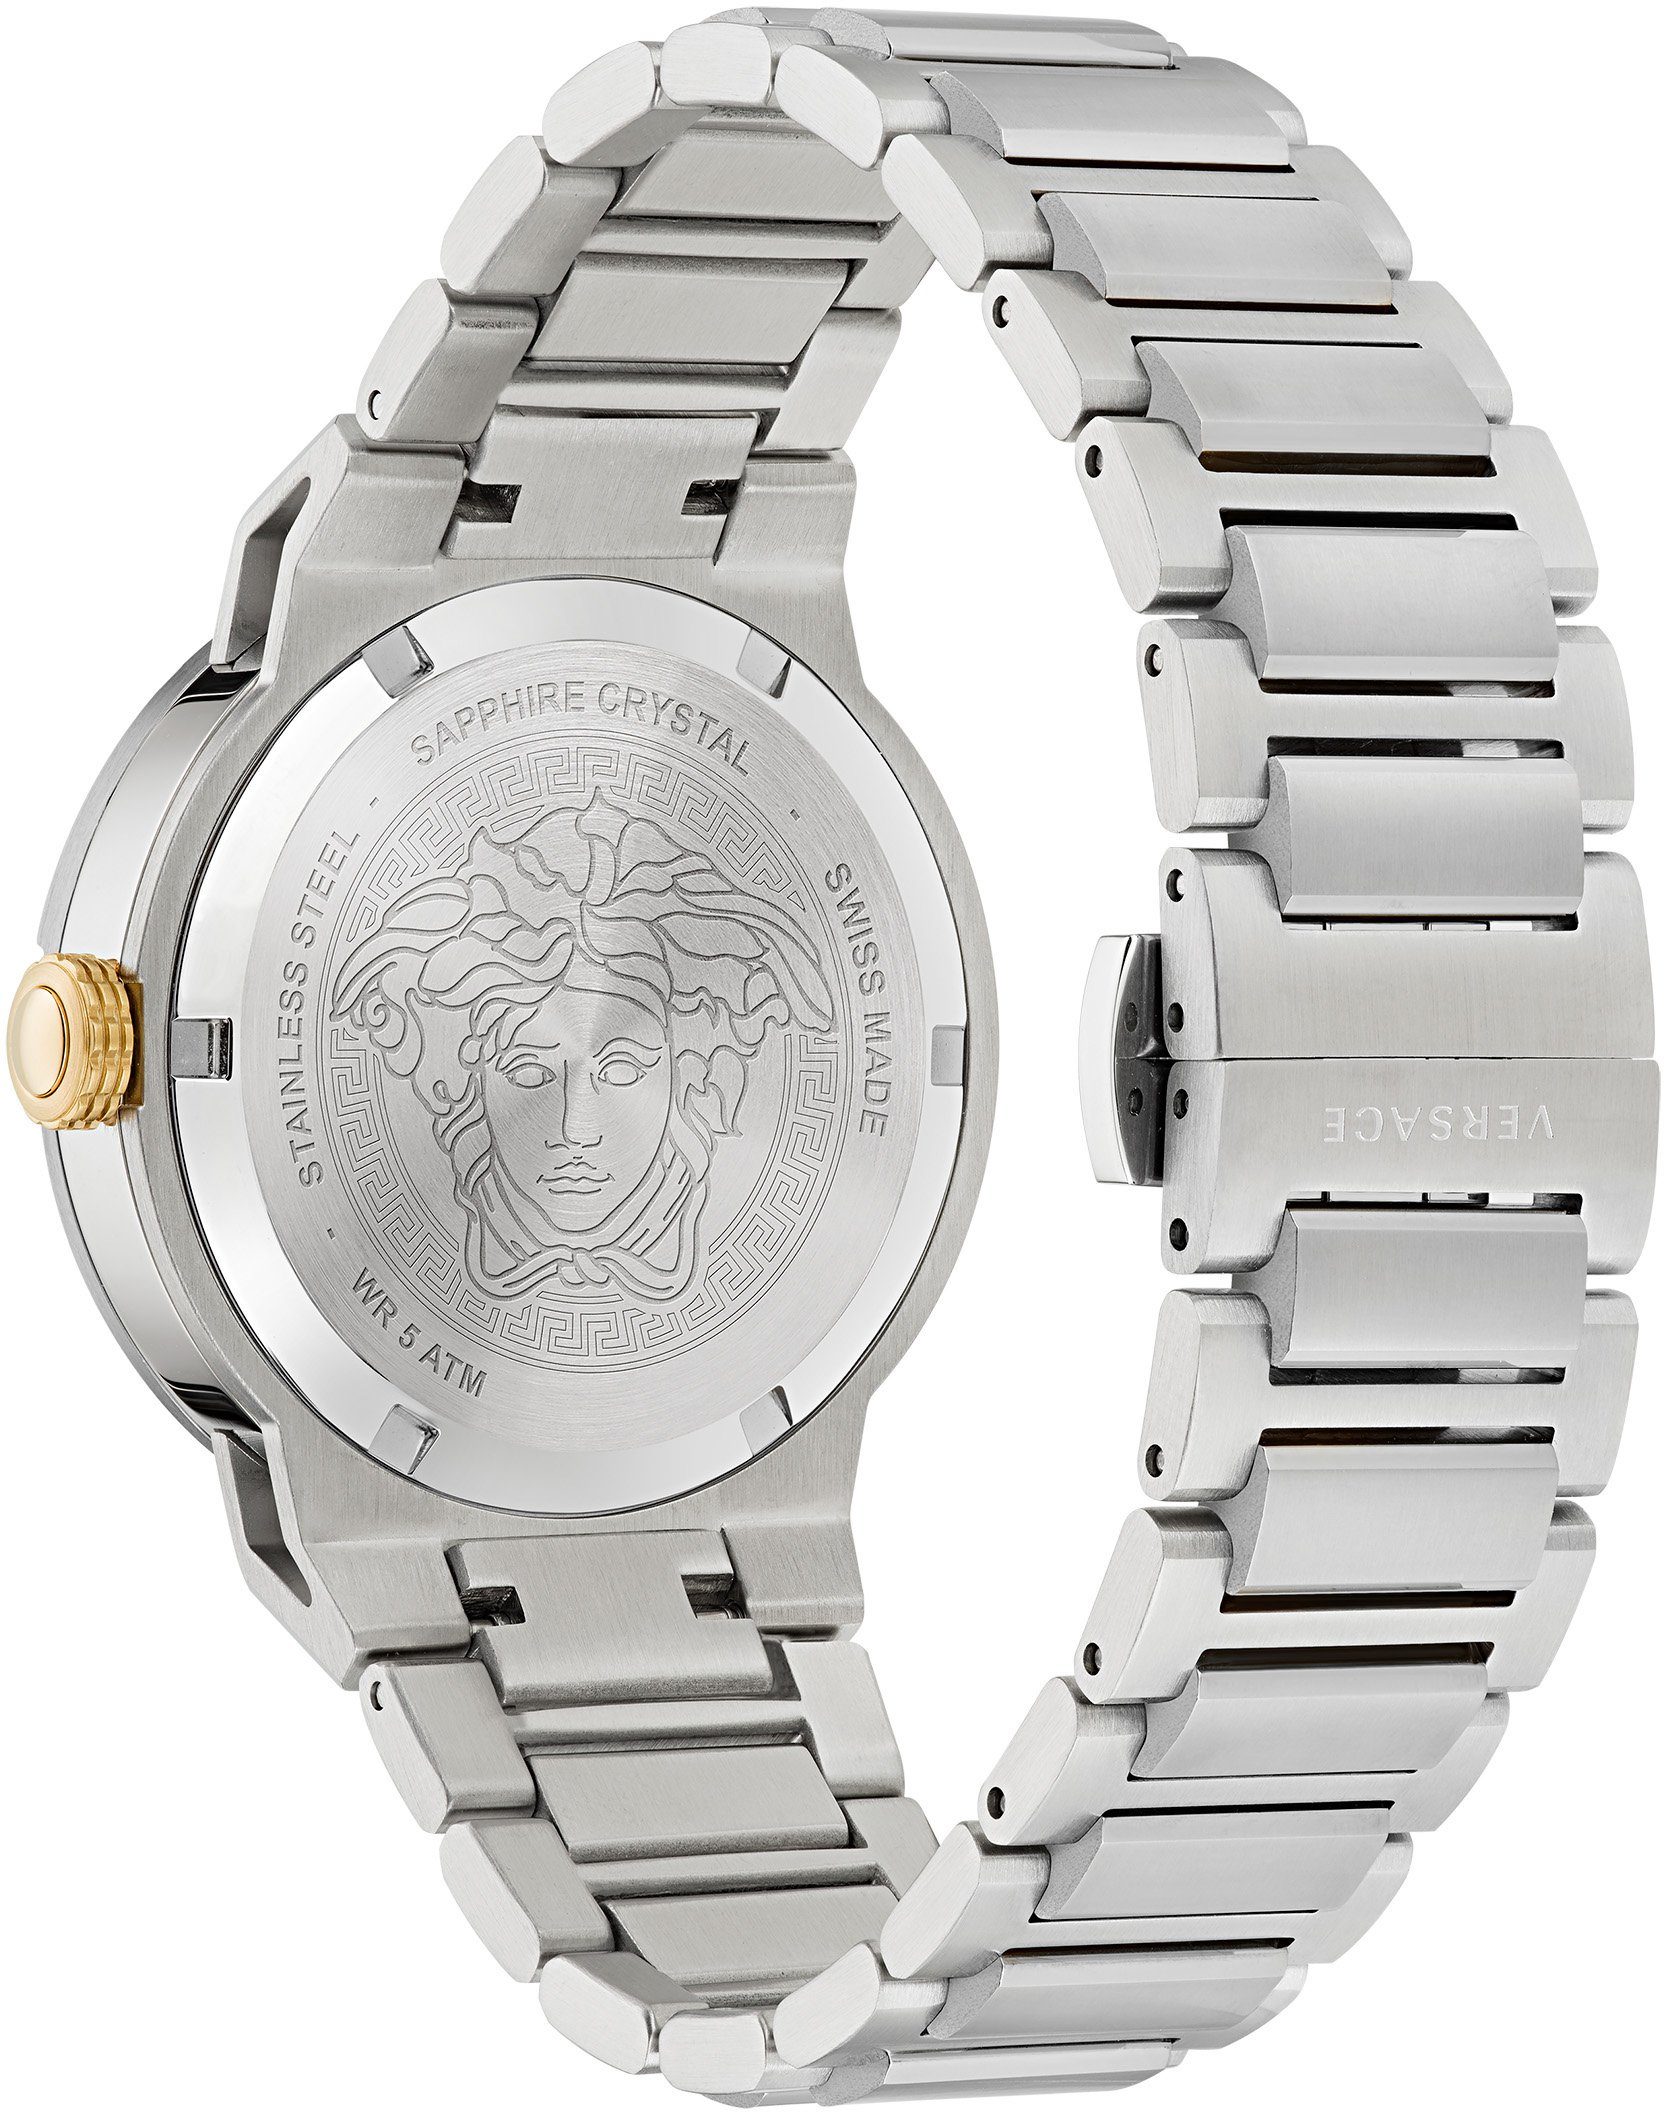 Versace Schweizer Uhr MEDUSA INFINITE, VE3F00322 silber